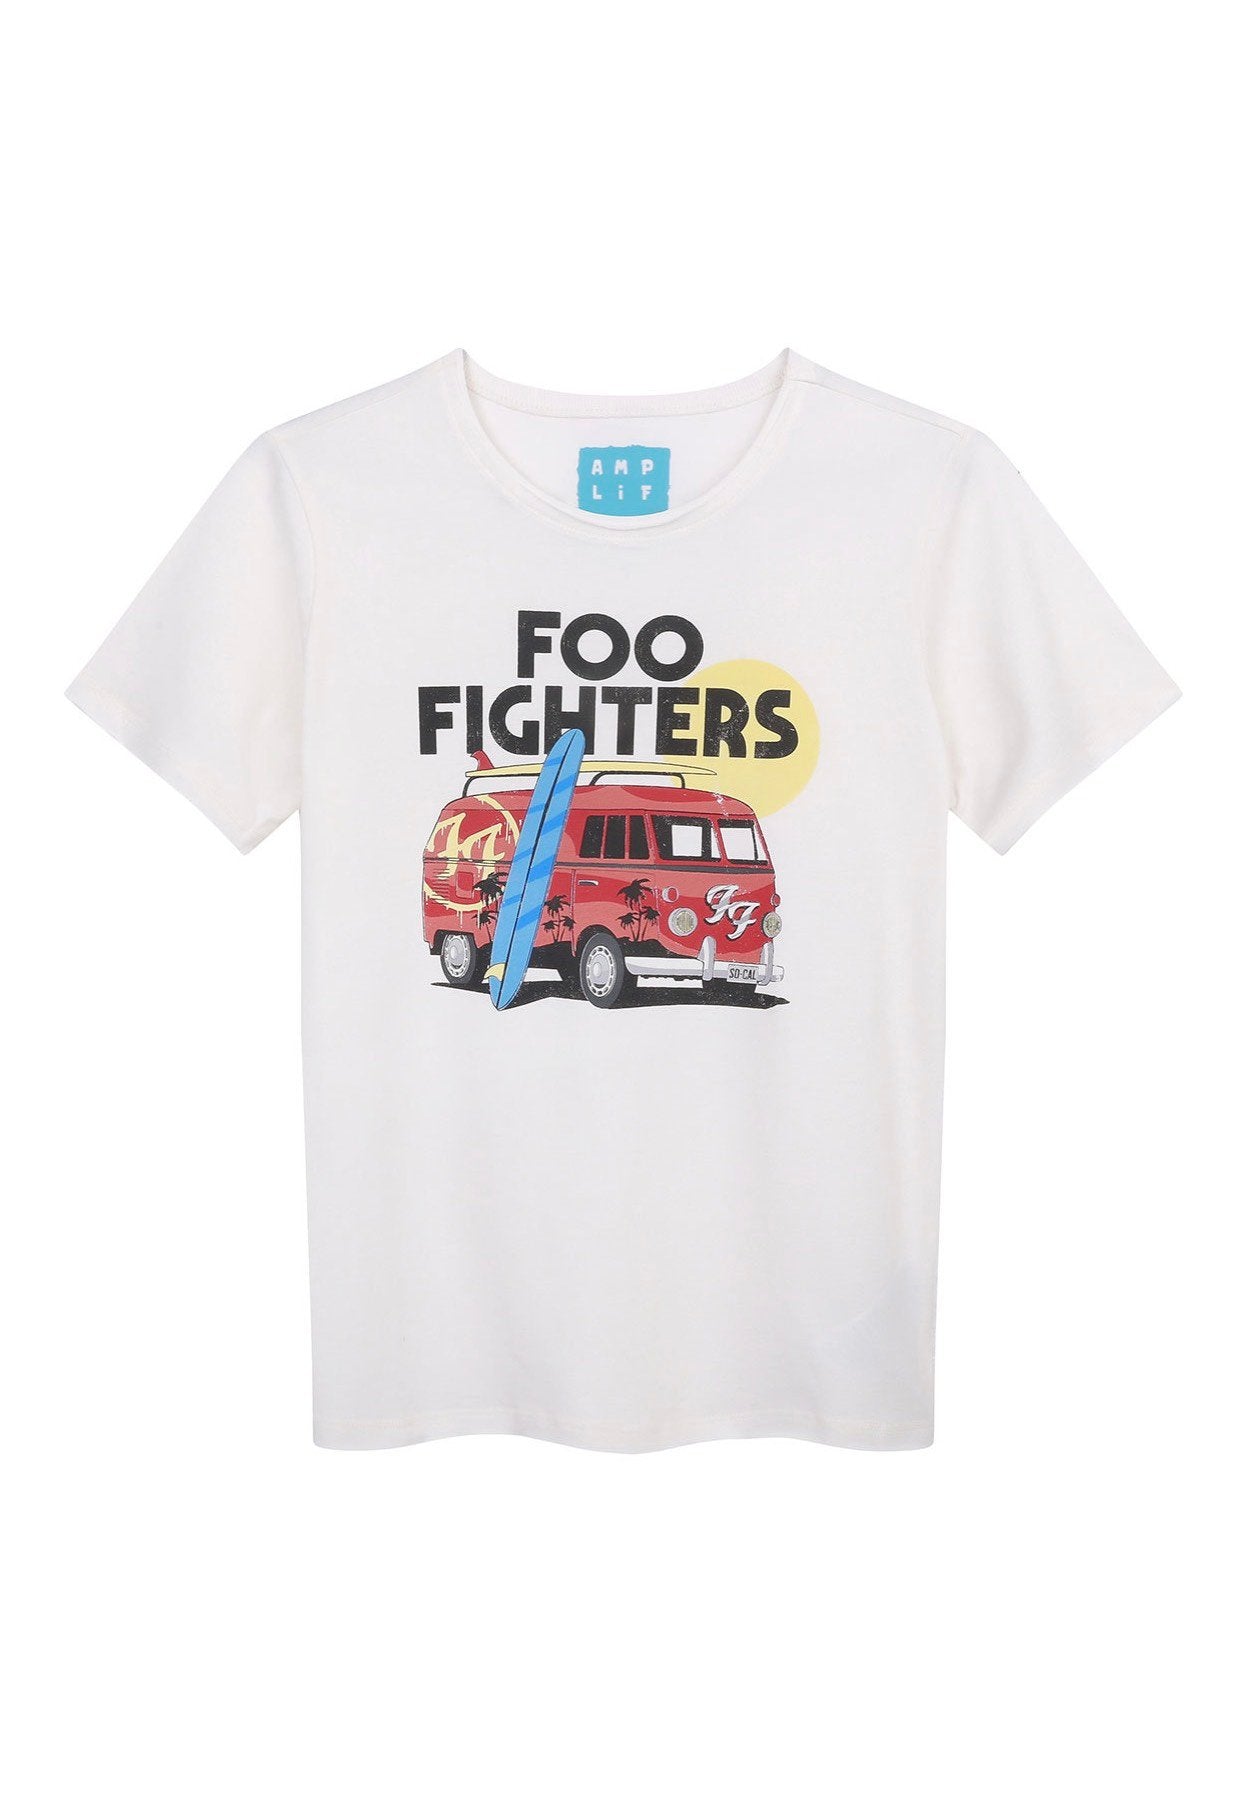 Foo Fighters - Camper Van White Kids - T-Shirt